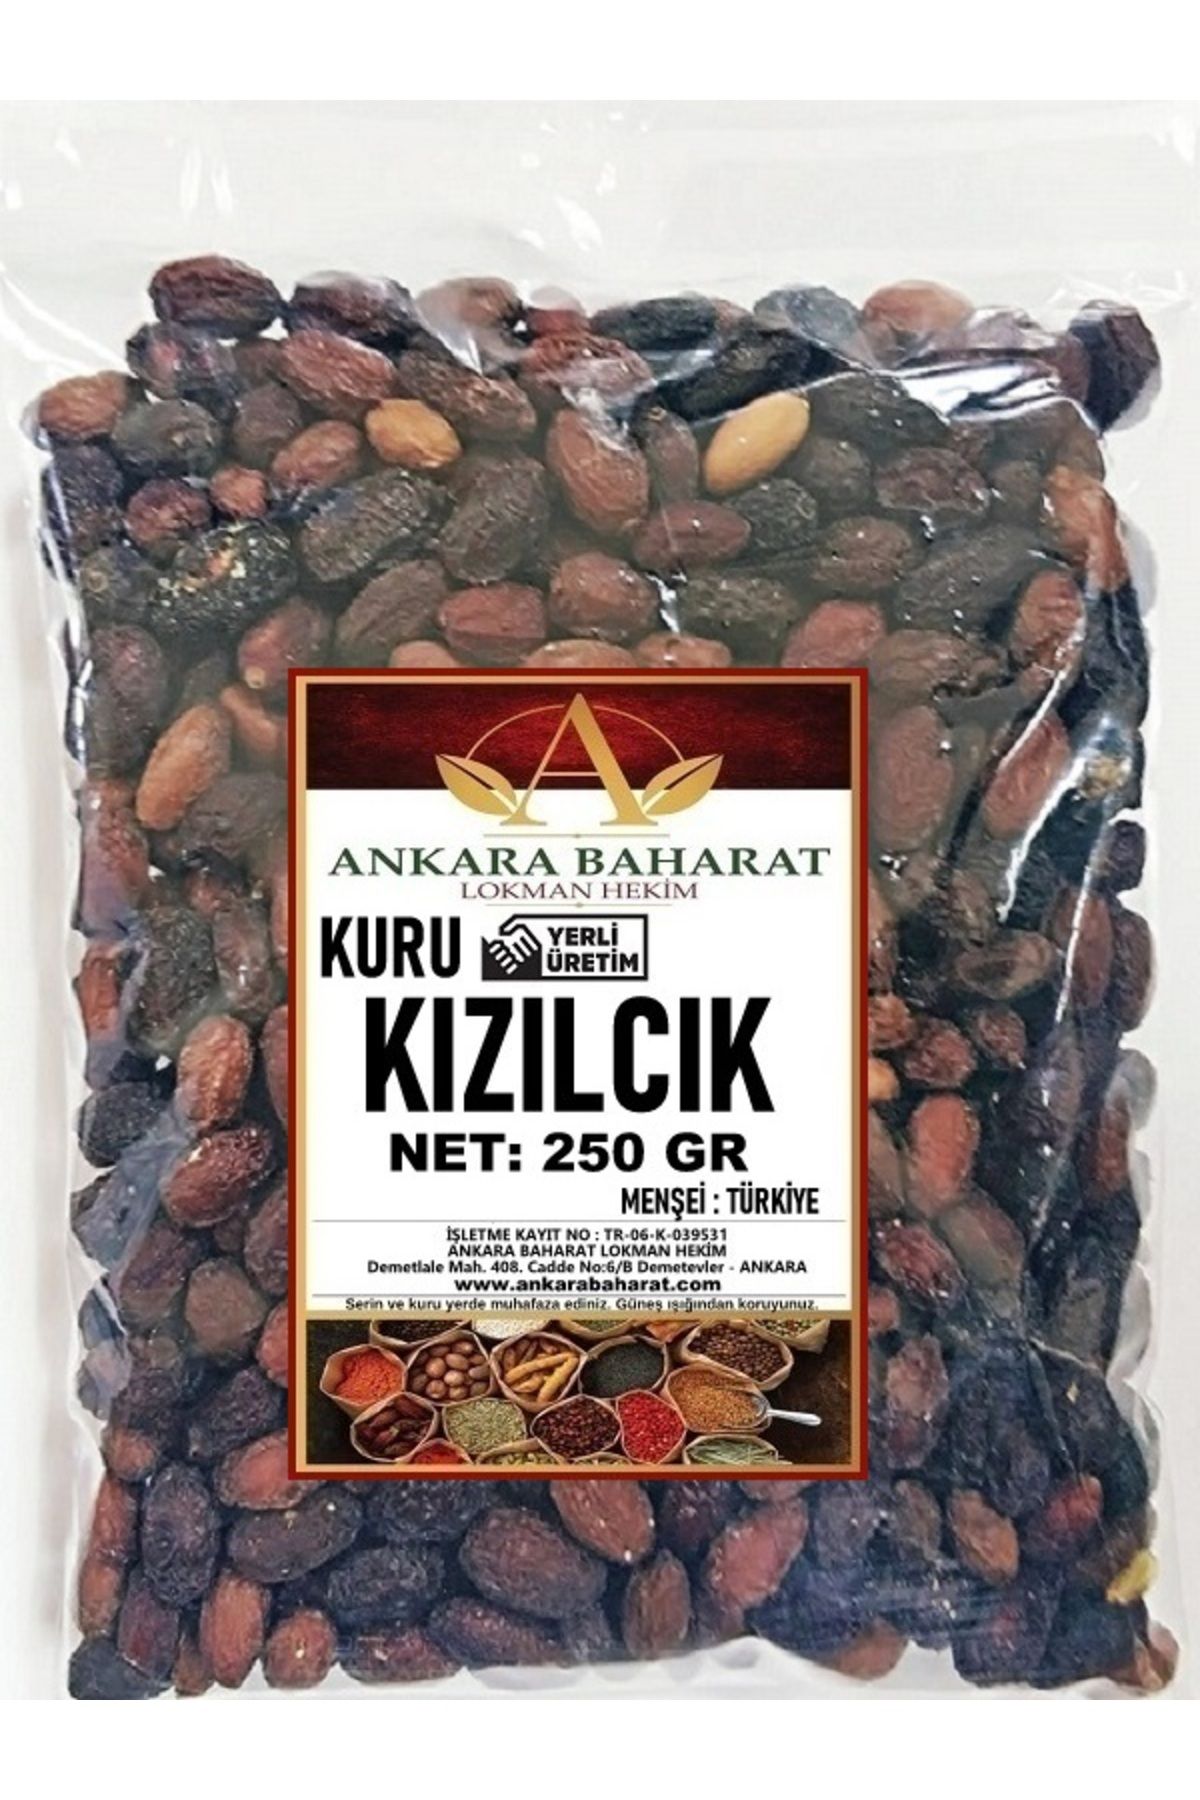 ankara baharat lokman hekim Kızılcık Kurusu - 250 gram - Doğal Kurutulmuş